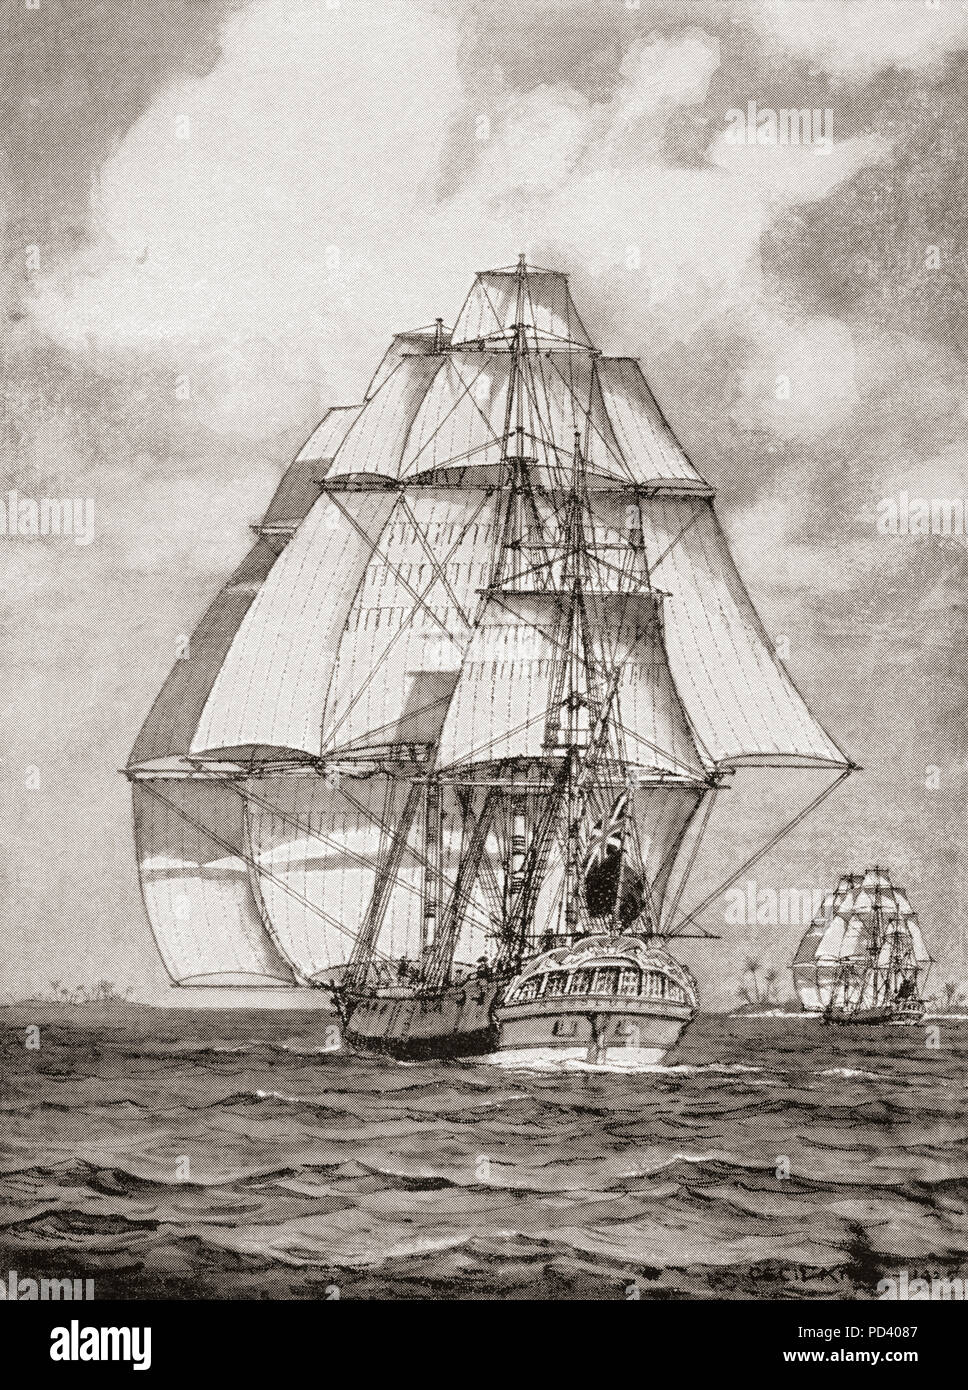 Le navi di risoluzione del sistema HMS e HMS scoperta al largo della costa australiana durante il terzo viaggio del capitano James Cook, 1776-1780. Dal libro di navi, pubblicato c.1920. Foto Stock